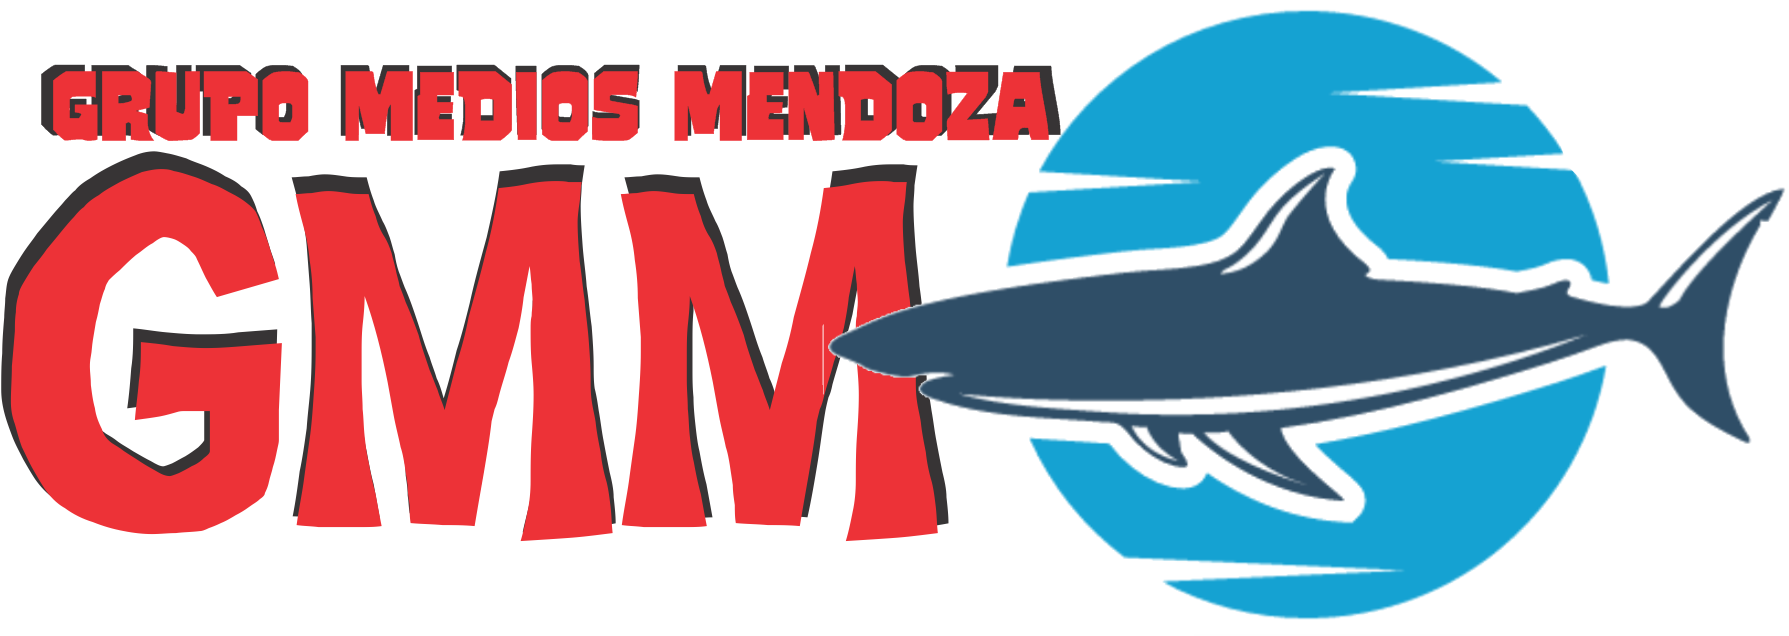 Grupo Medios Mendoza